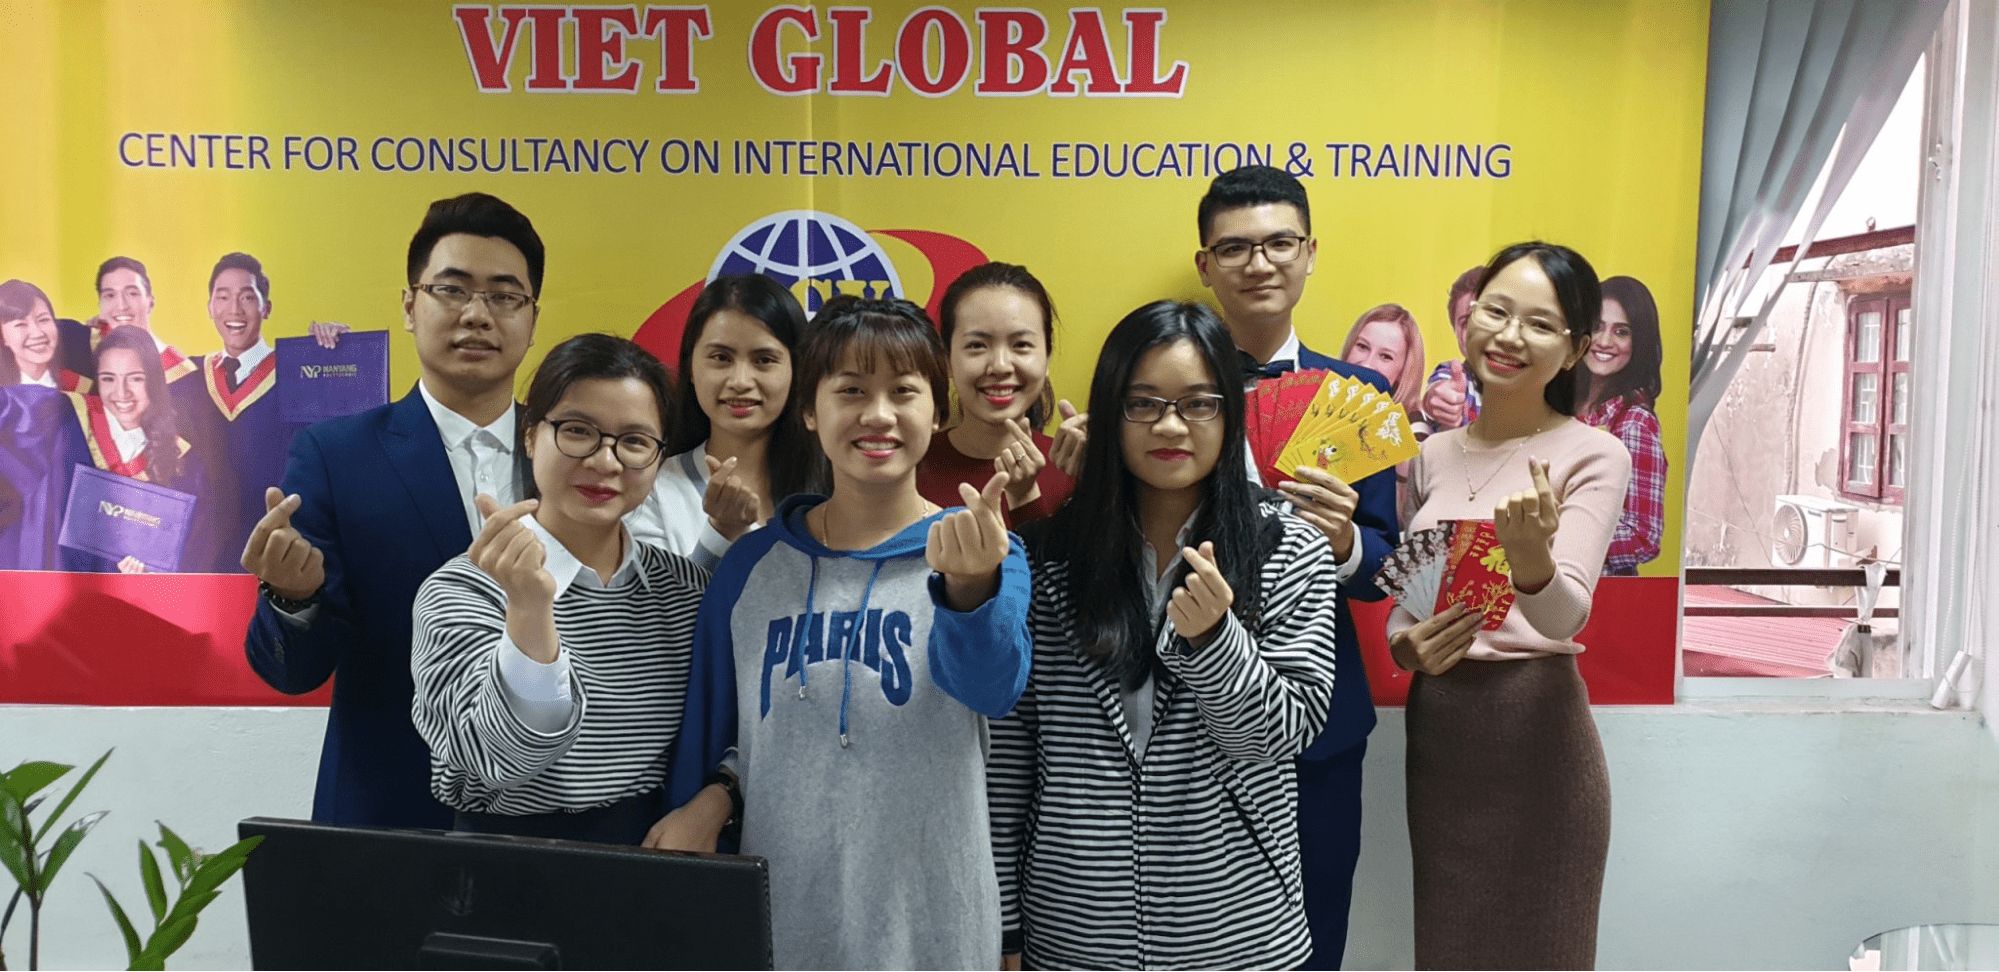 Du Học Việt Global